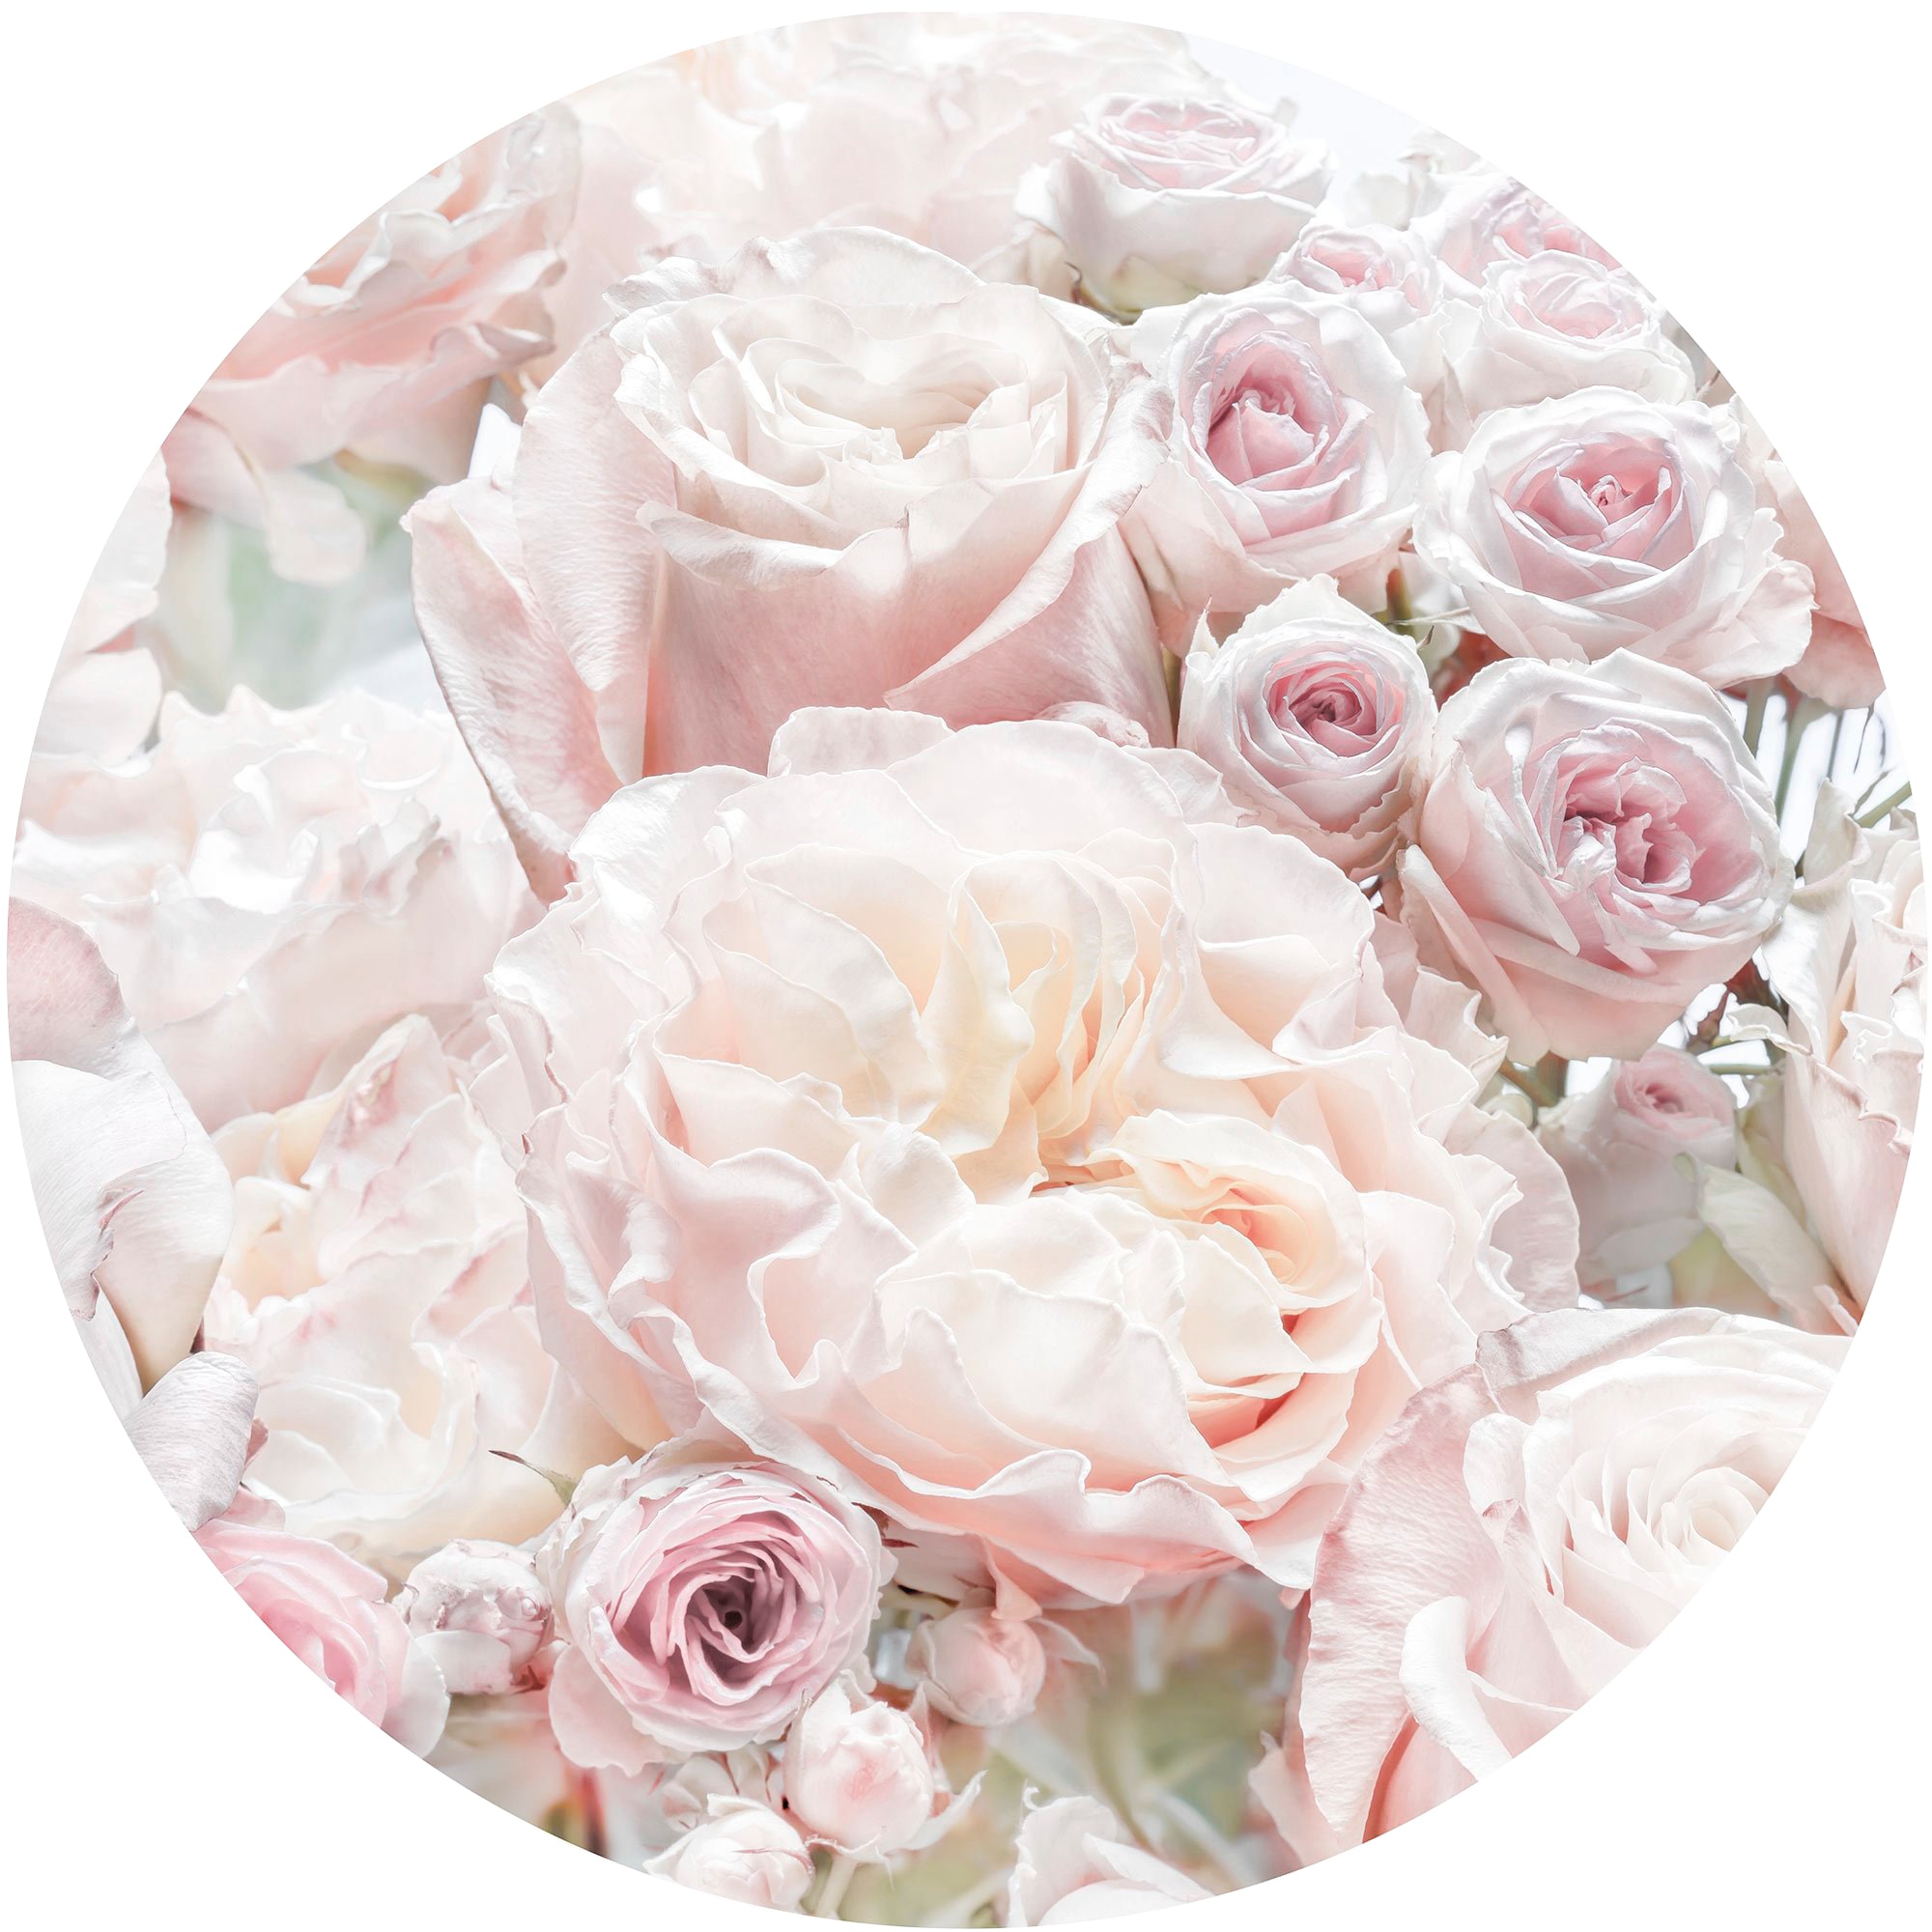 Komar Fototapete »Pink and Cream Roses«, 125x125 cm (Breite x Höhe), rund und selbstklebend